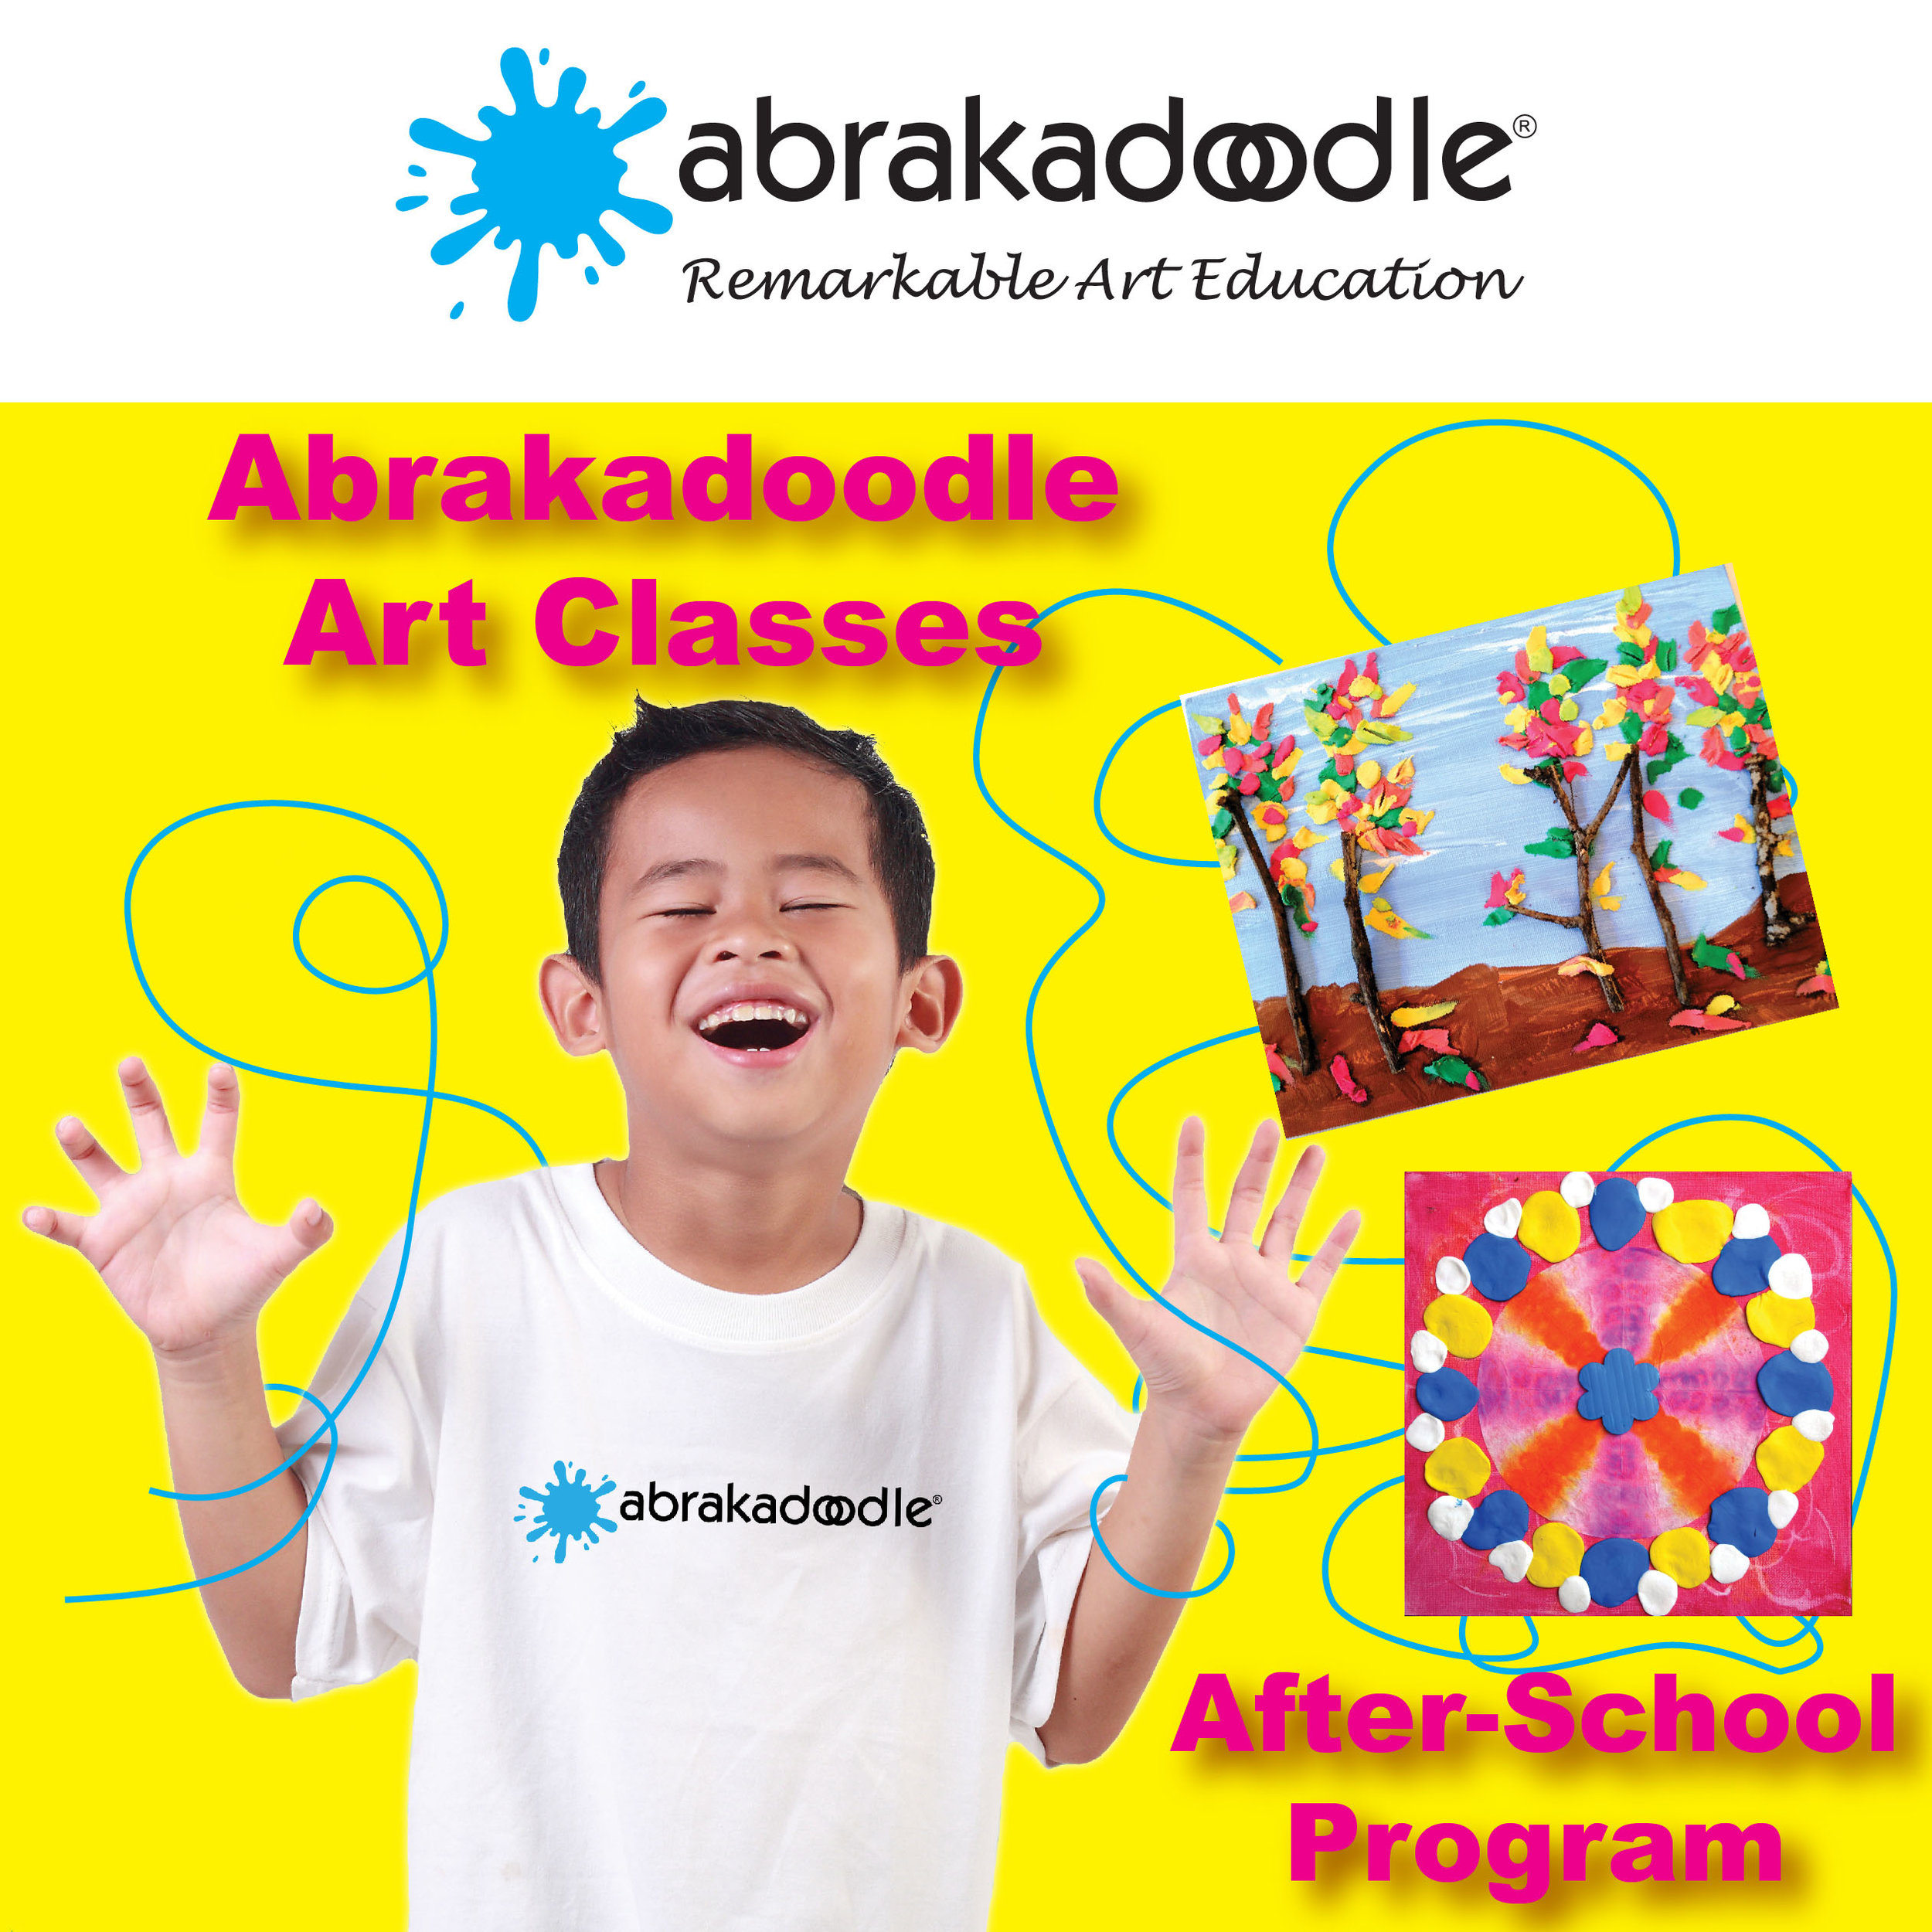 Abrakadoodle Programs Campaign